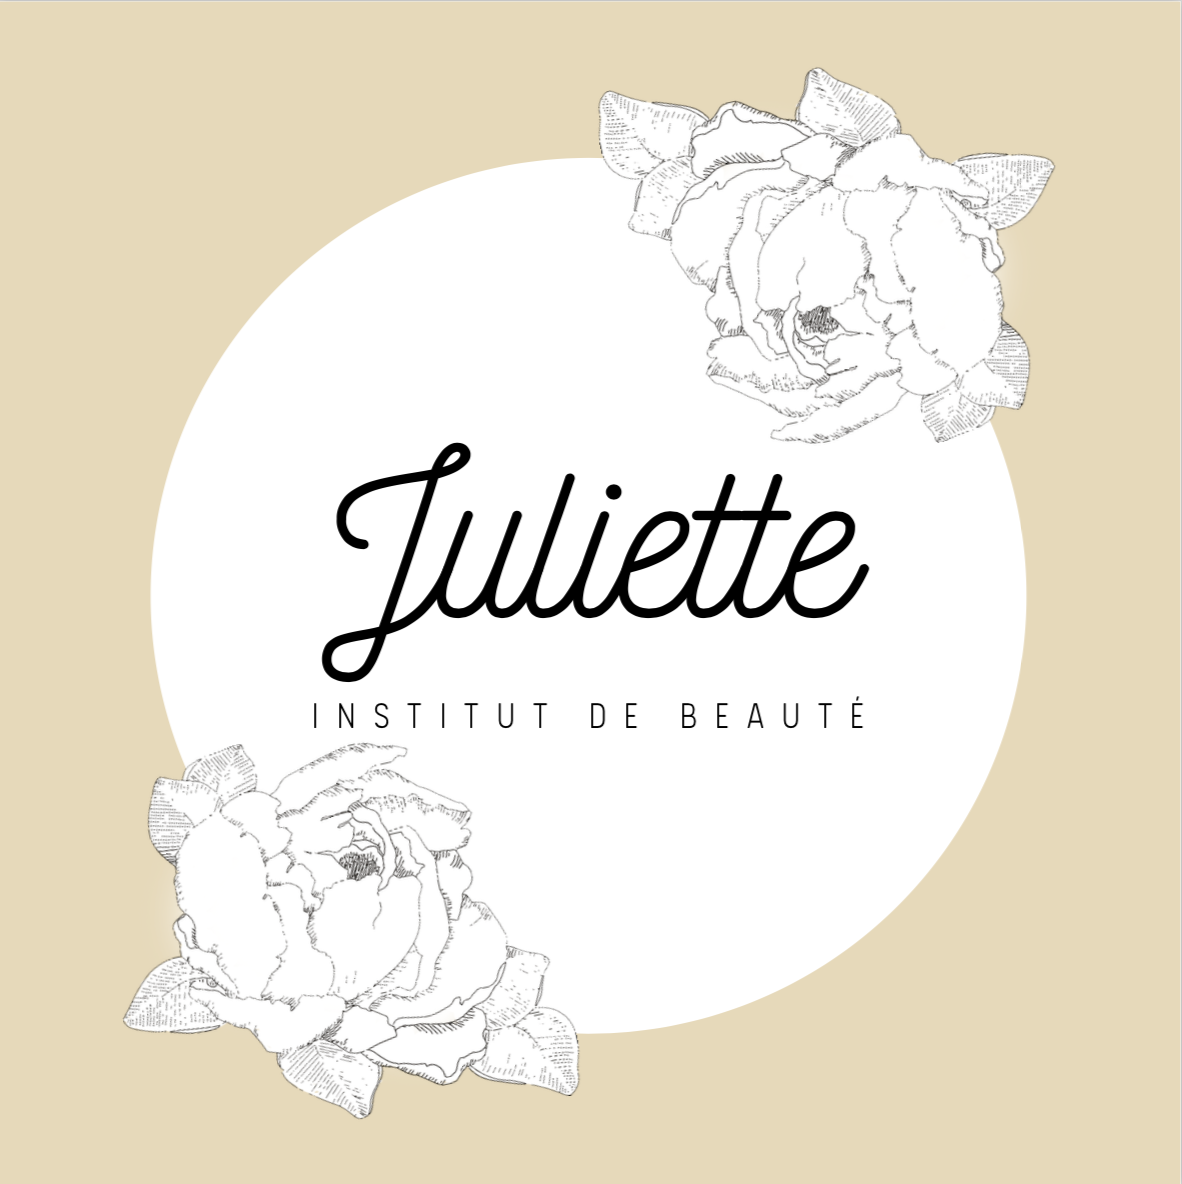 Juliette Institut de beauté